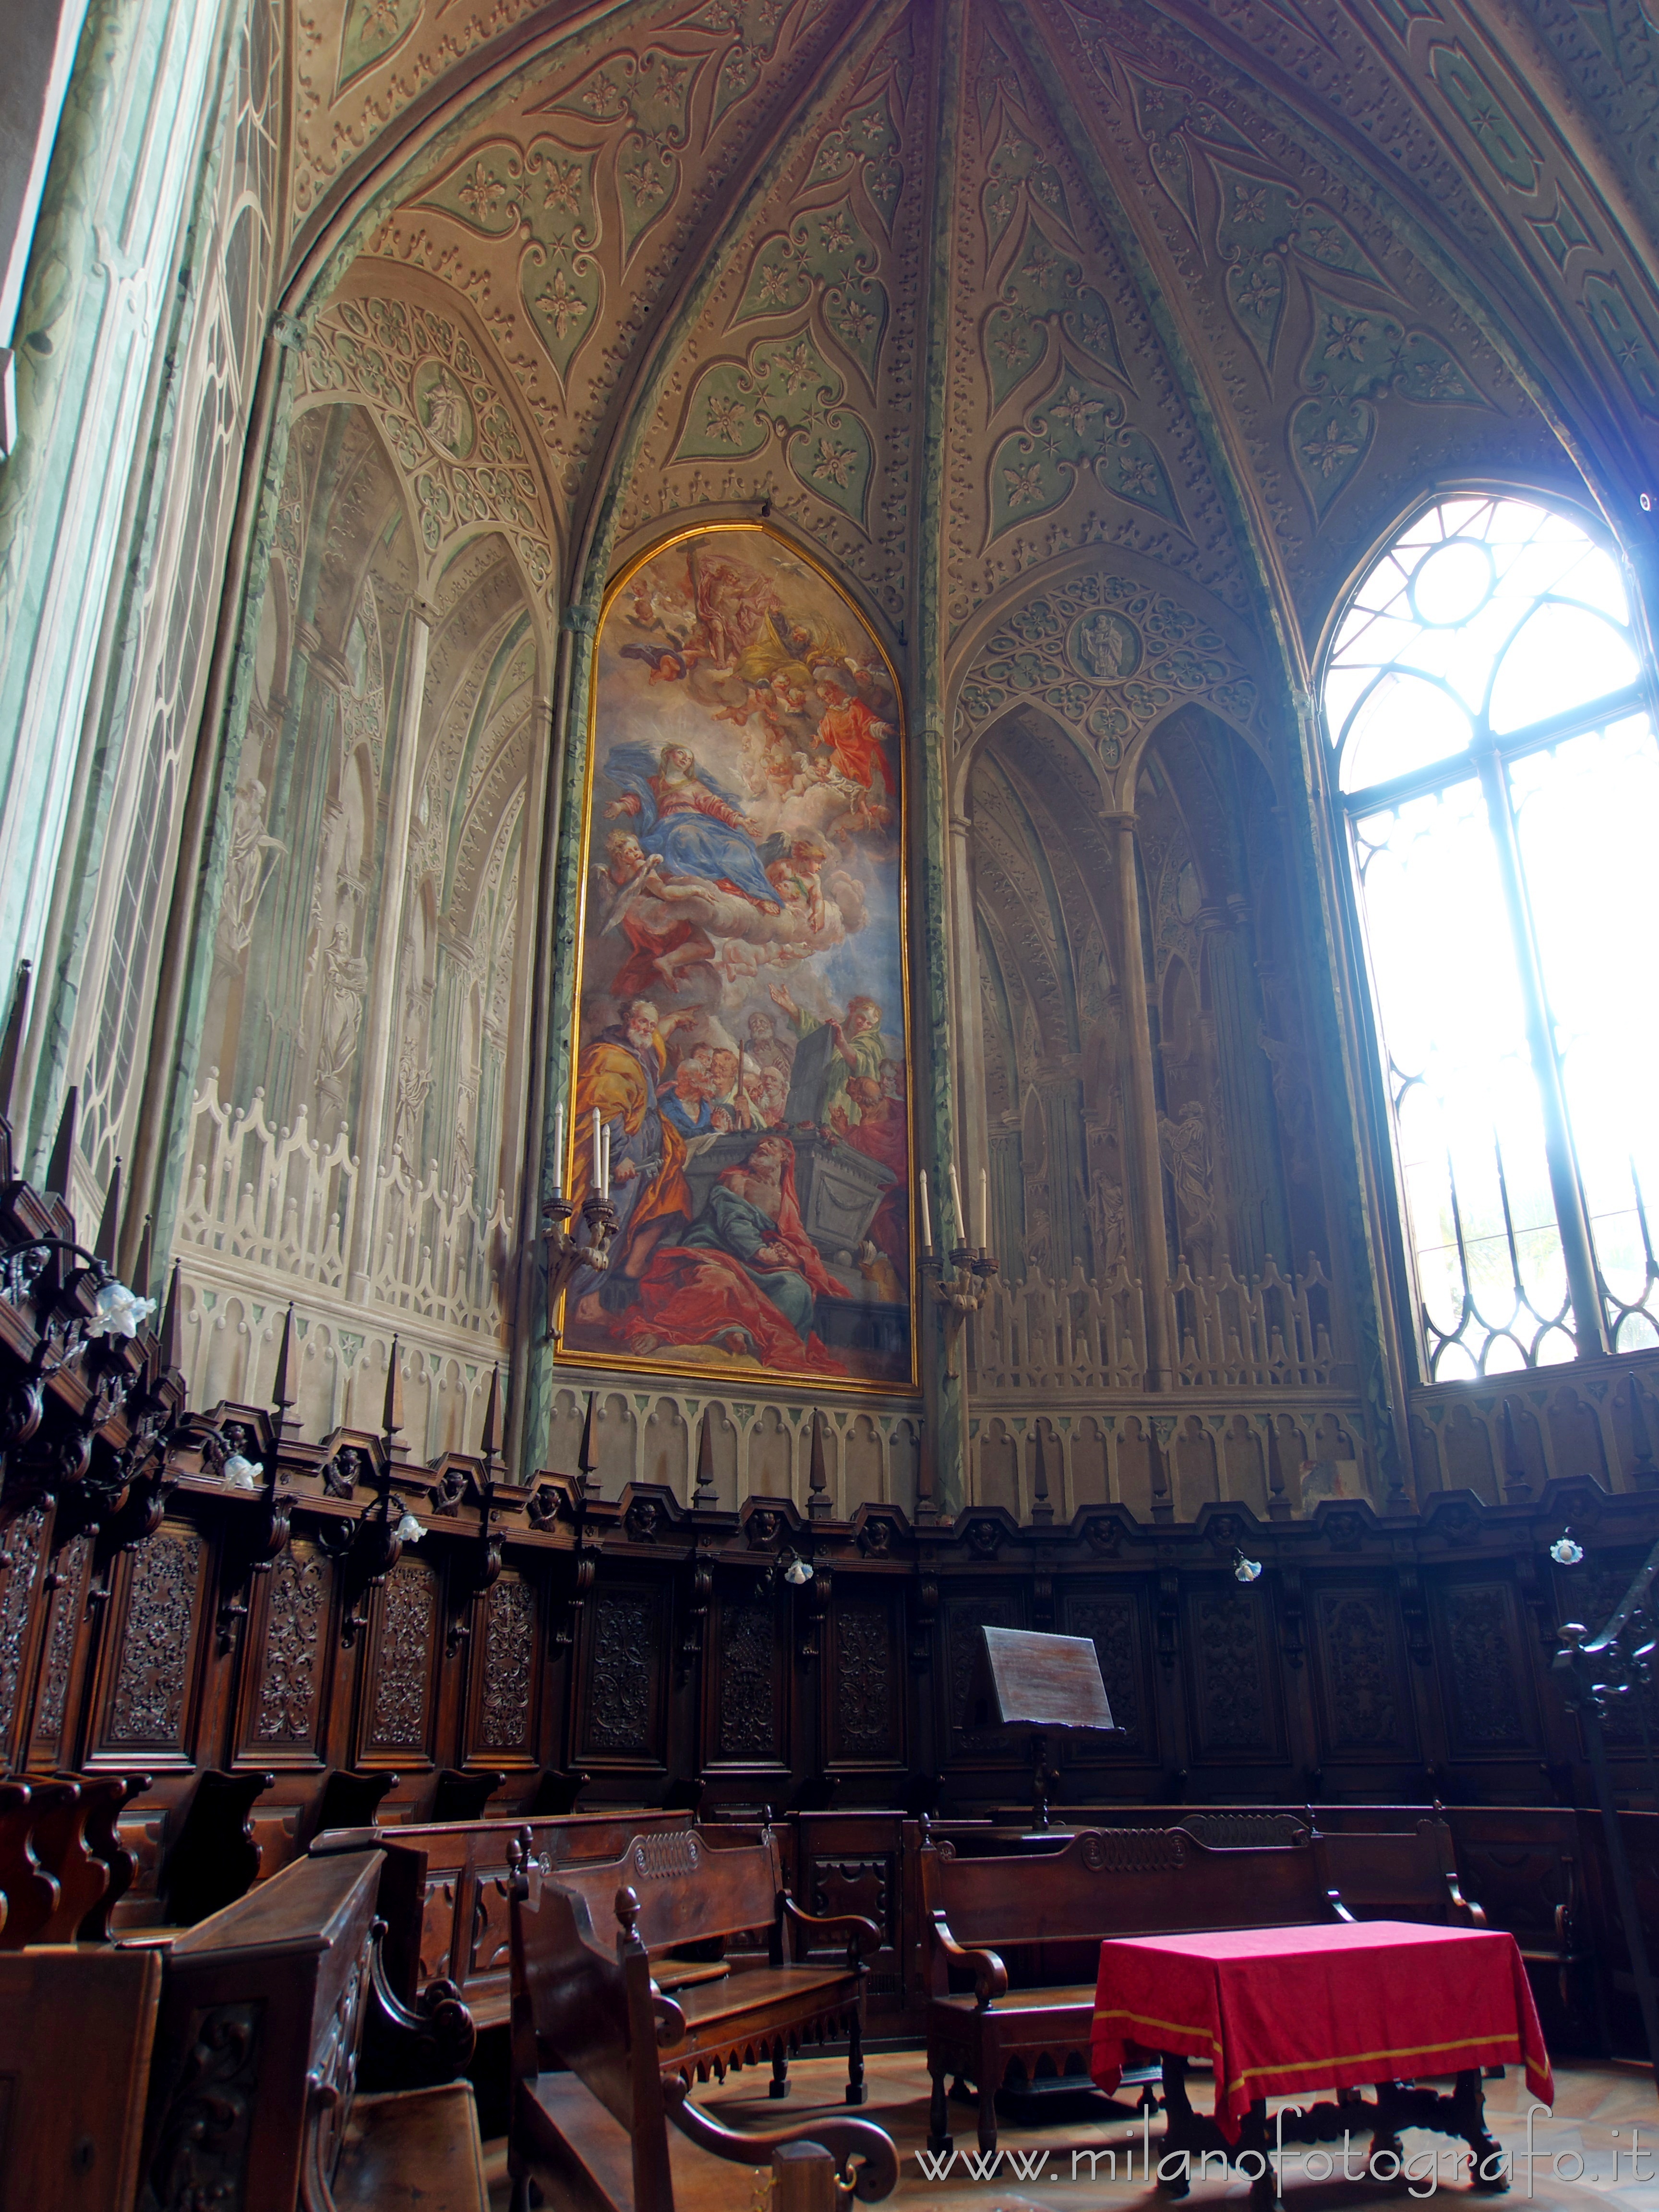 Biella (Italy): Choir of the Cathedral of Biella - Biella (Italy)